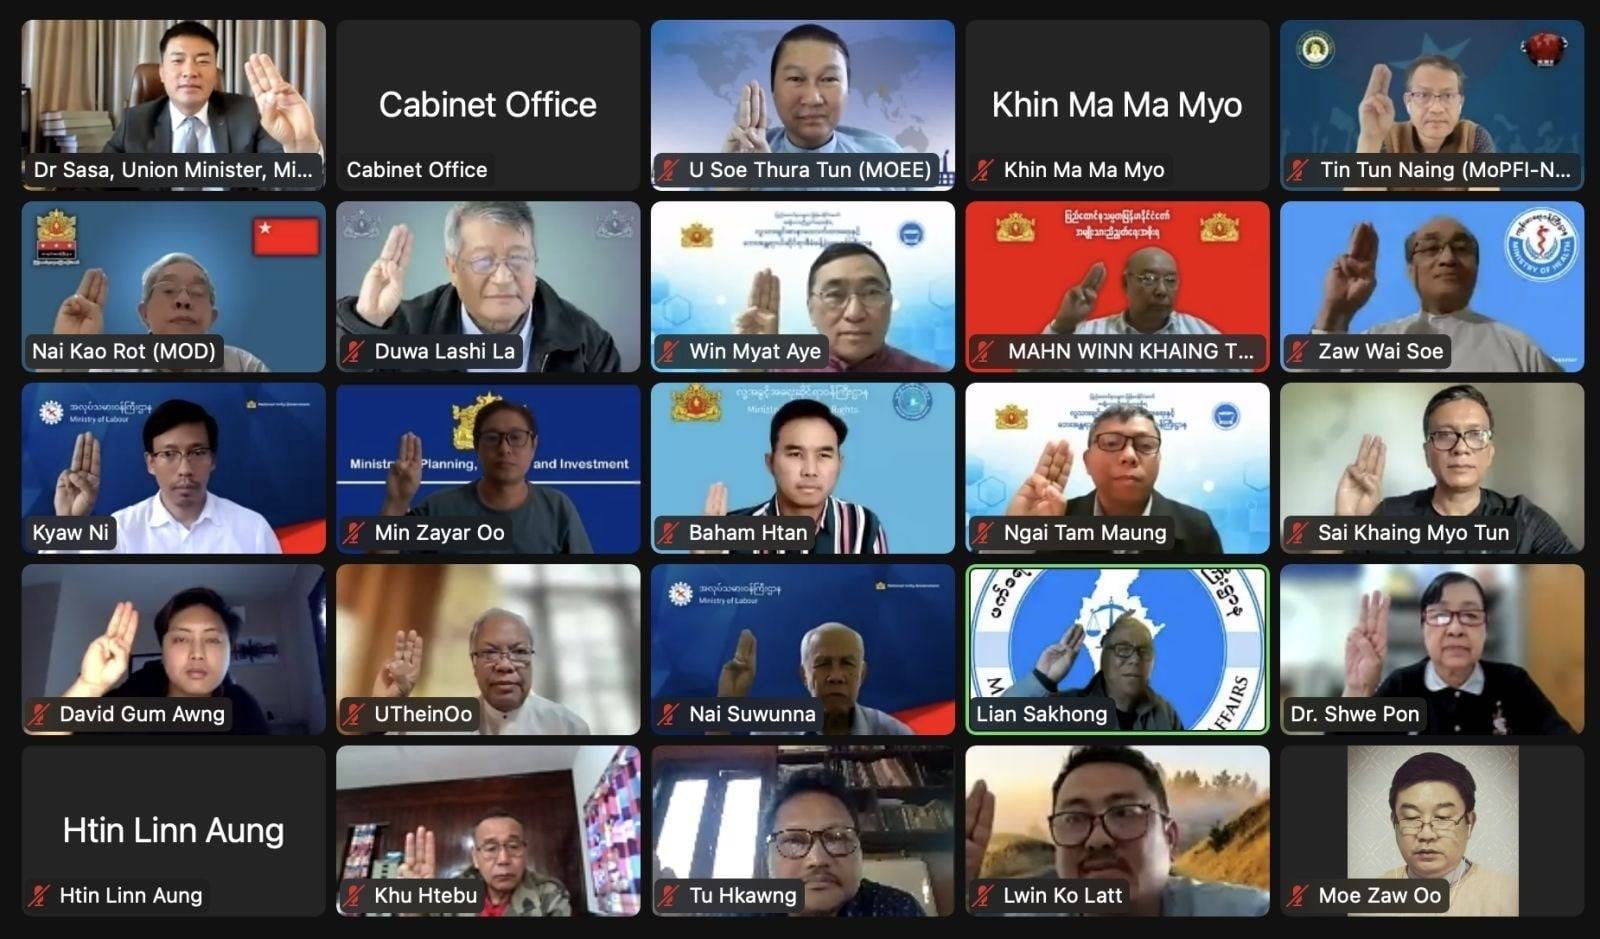 အမျိုးသားညီညွတ်ရေးအစိုးရ ၈၂ ကြိမ်မြောက် အစိုးရအဖွဲ့အစည်းဝေးပြုလုပ်